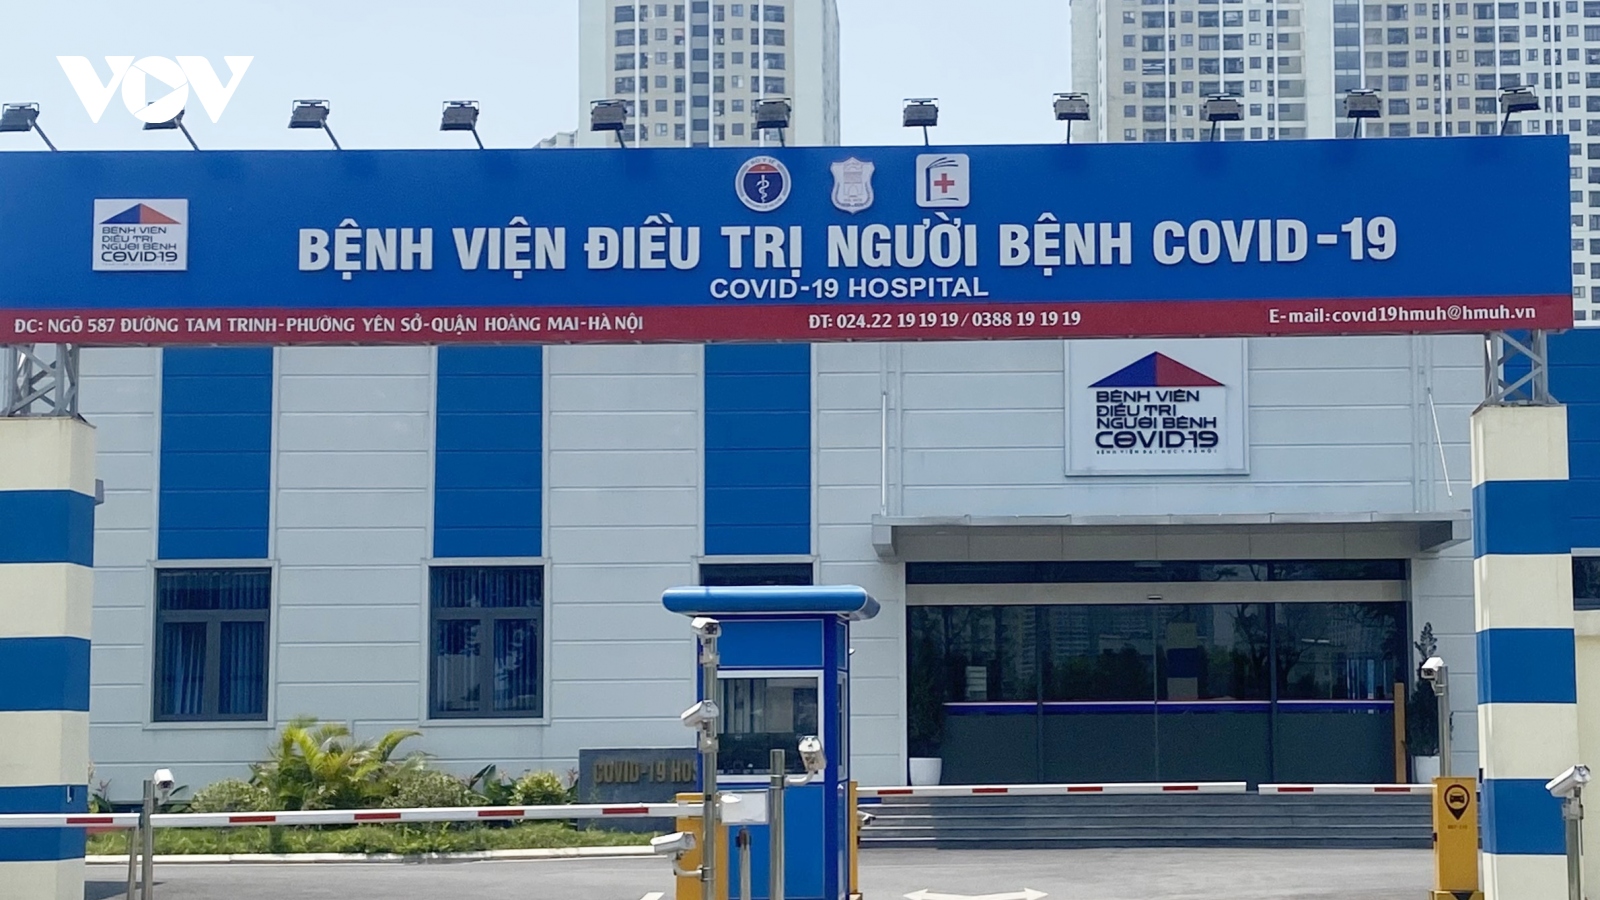 COVID-19 chuyển sang nhóm B: Bệnh viện Điều trị COVID-19 tại Hà Nội đã giải thể